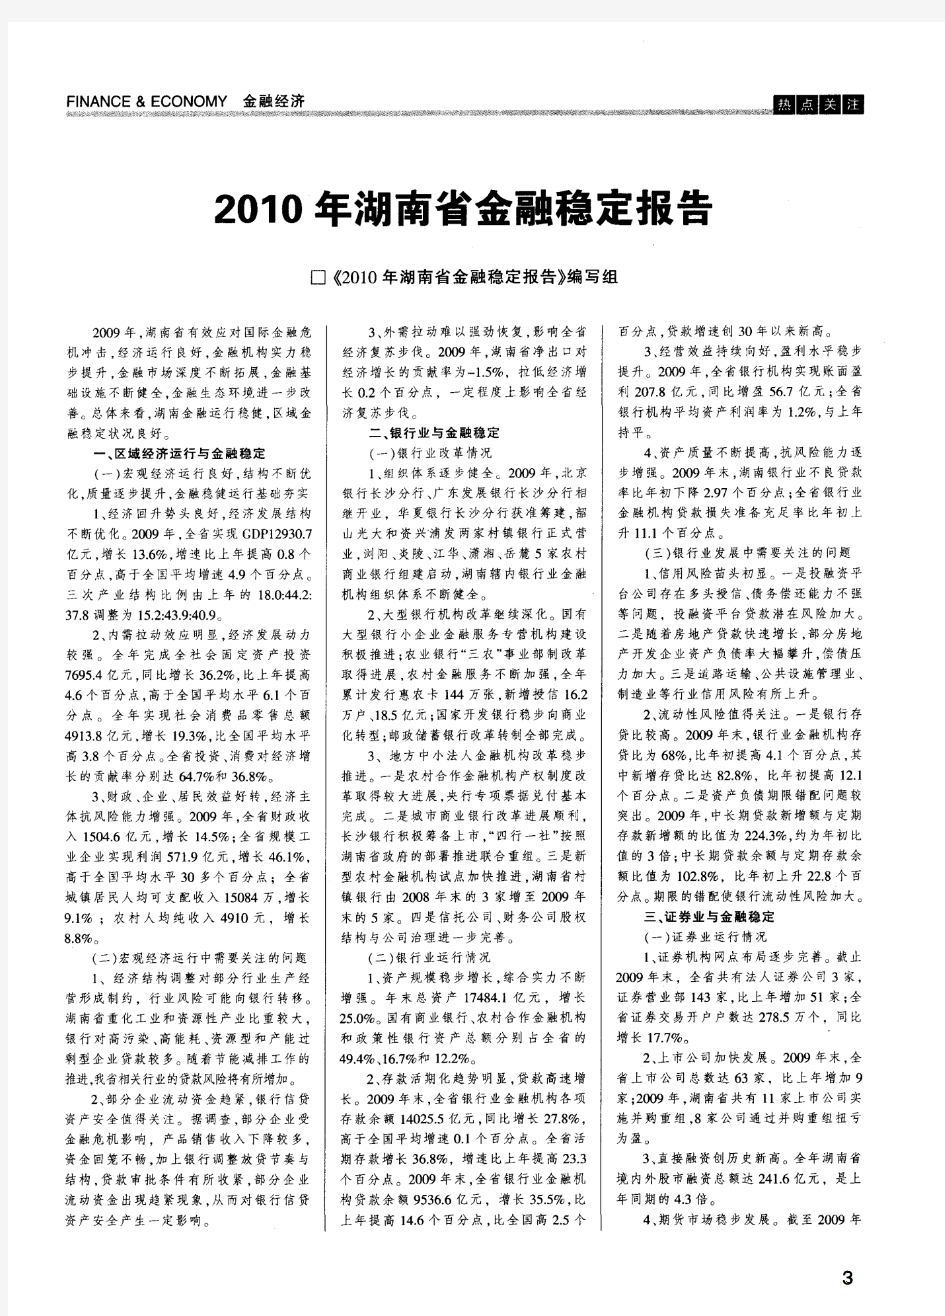 2010年湖南省金融稳定报告